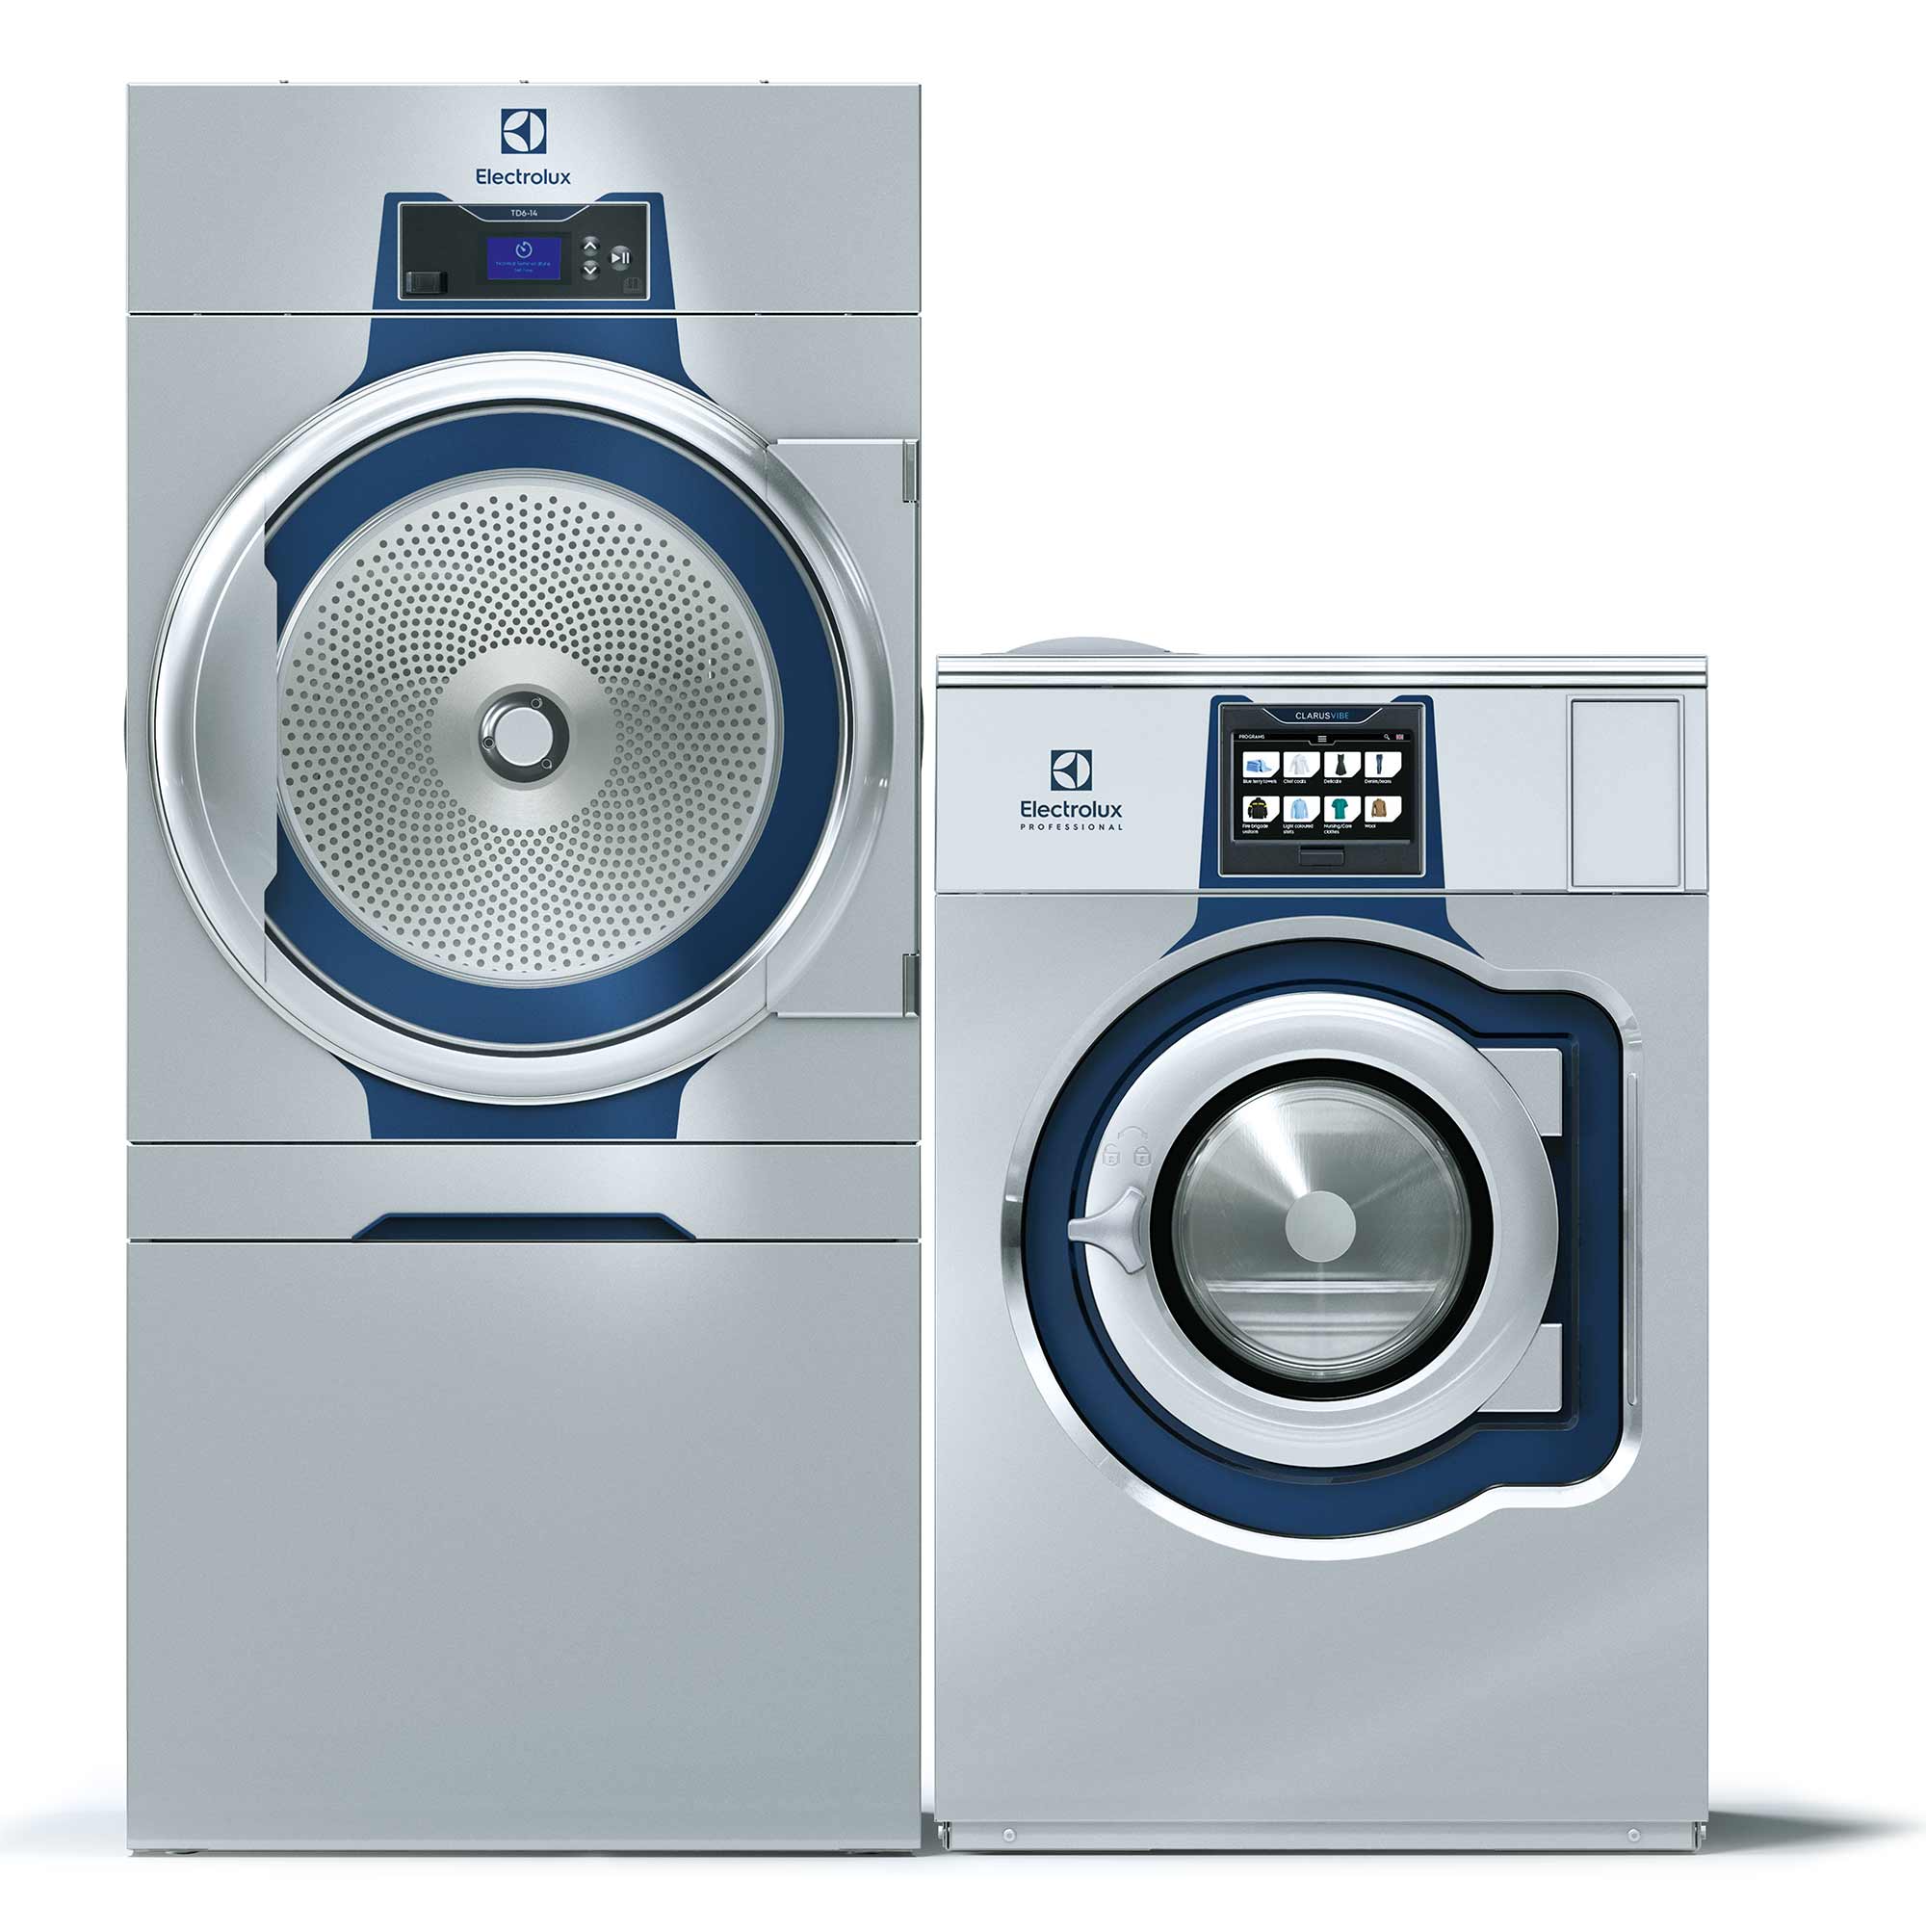 Spar på energien med Line 6000 vaskerimaskiner